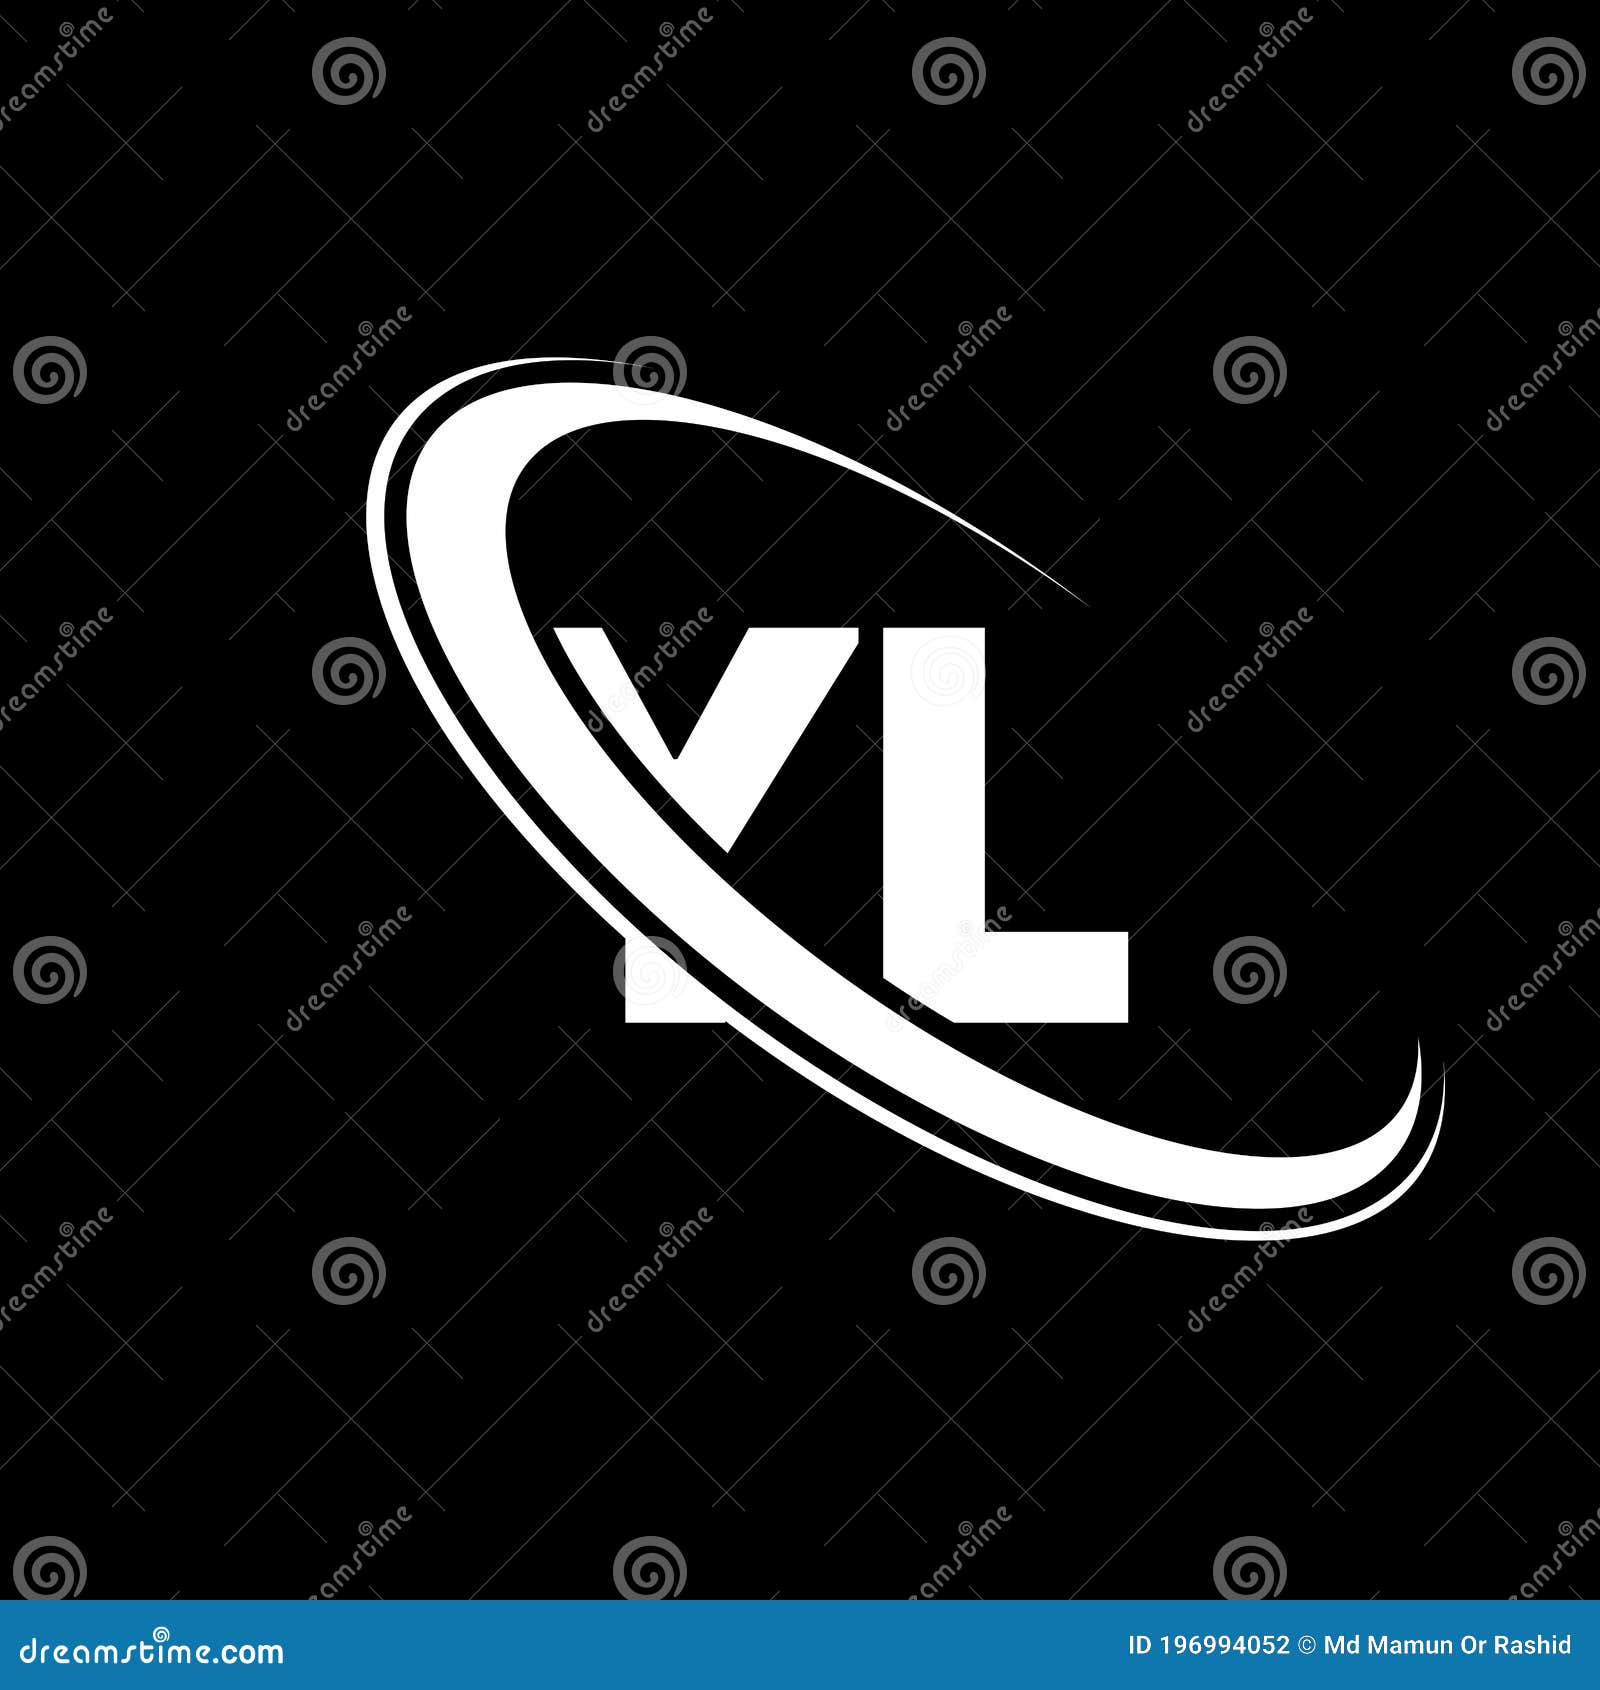 YL Logo. Y L Design. White YL Letter. YL/Y L Letter Logo Design